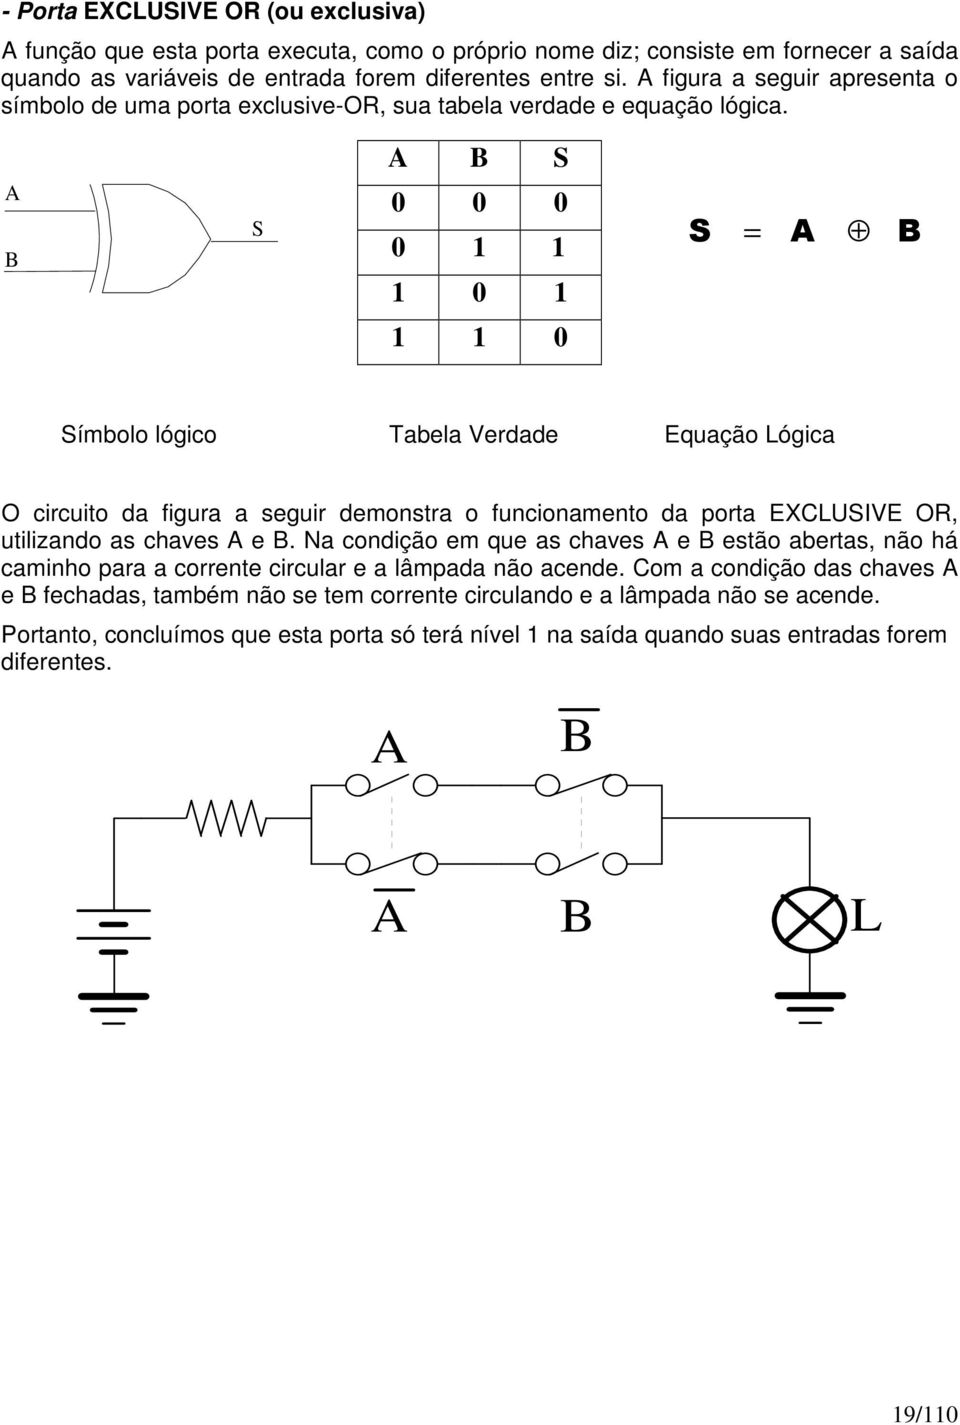 A B S A B S 0 0 0 0 1 1 1 0 1 = 1 1 0 Símbolo lógico Tabela Verdade Equação Lógica O circuito da figura a seguir demonstra o funcionamento da porta EXCLUSIVE OR, utilizando as chaves A e B.